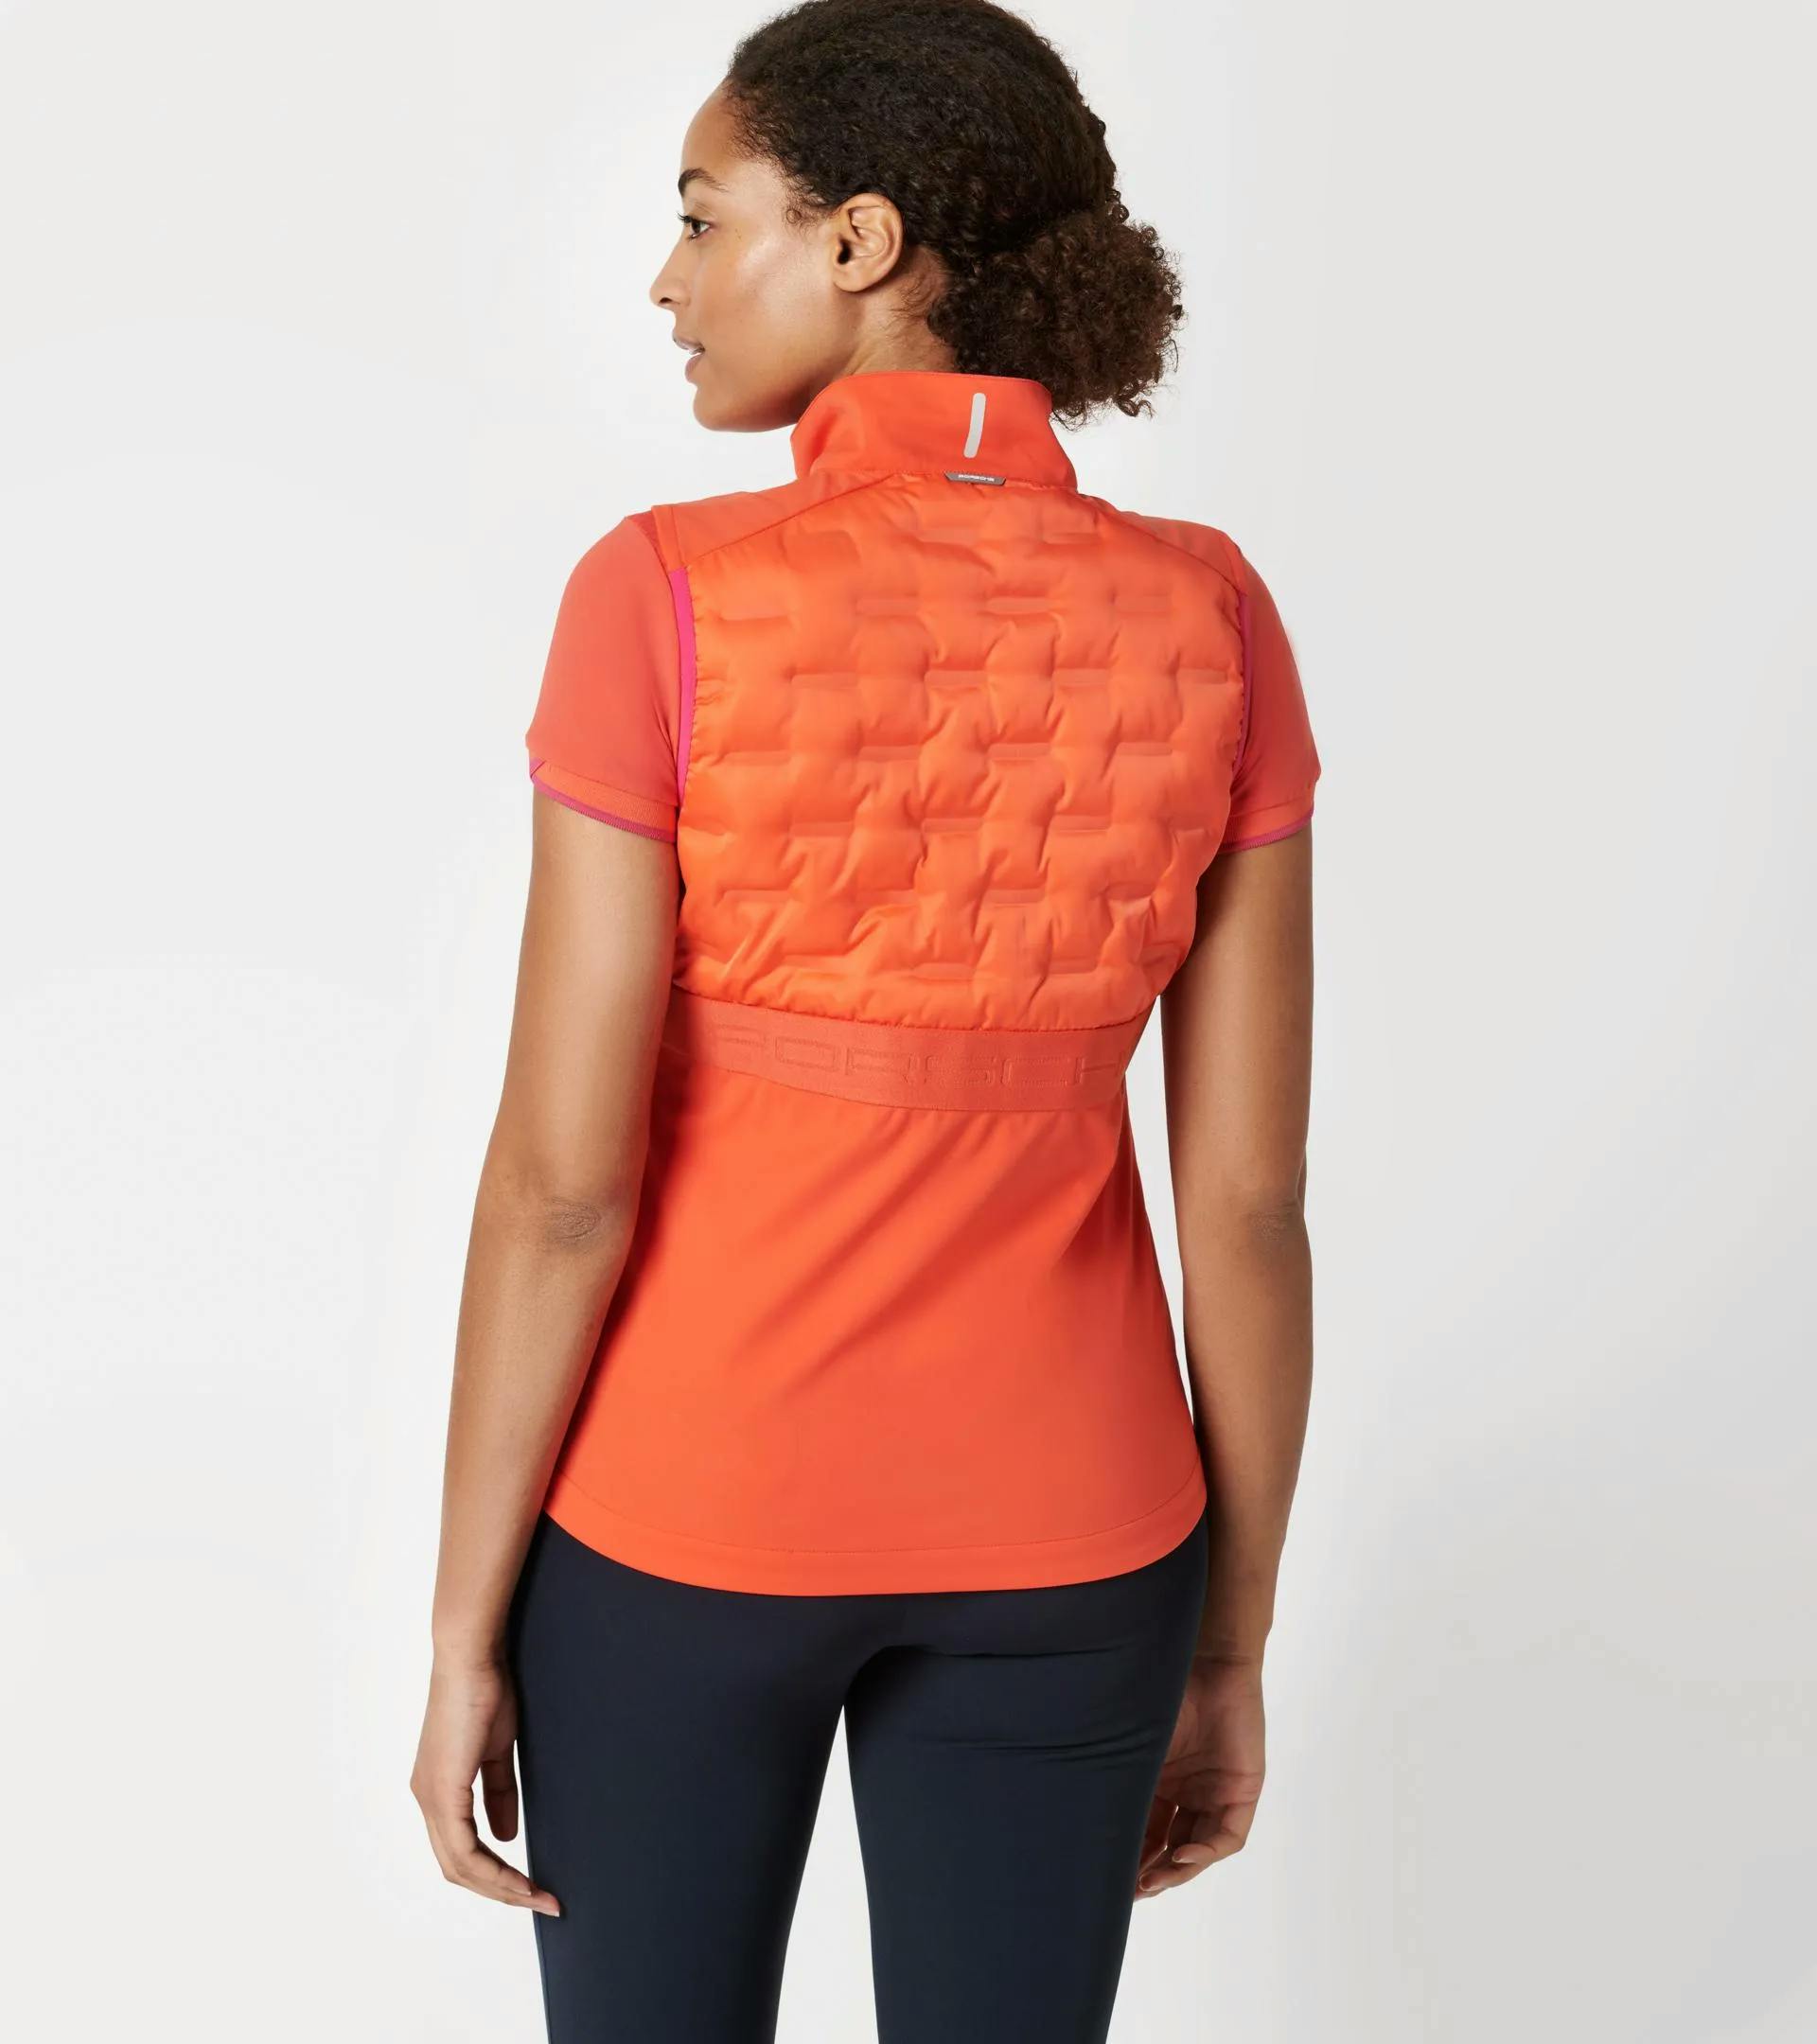 Women's vest – Sport 6